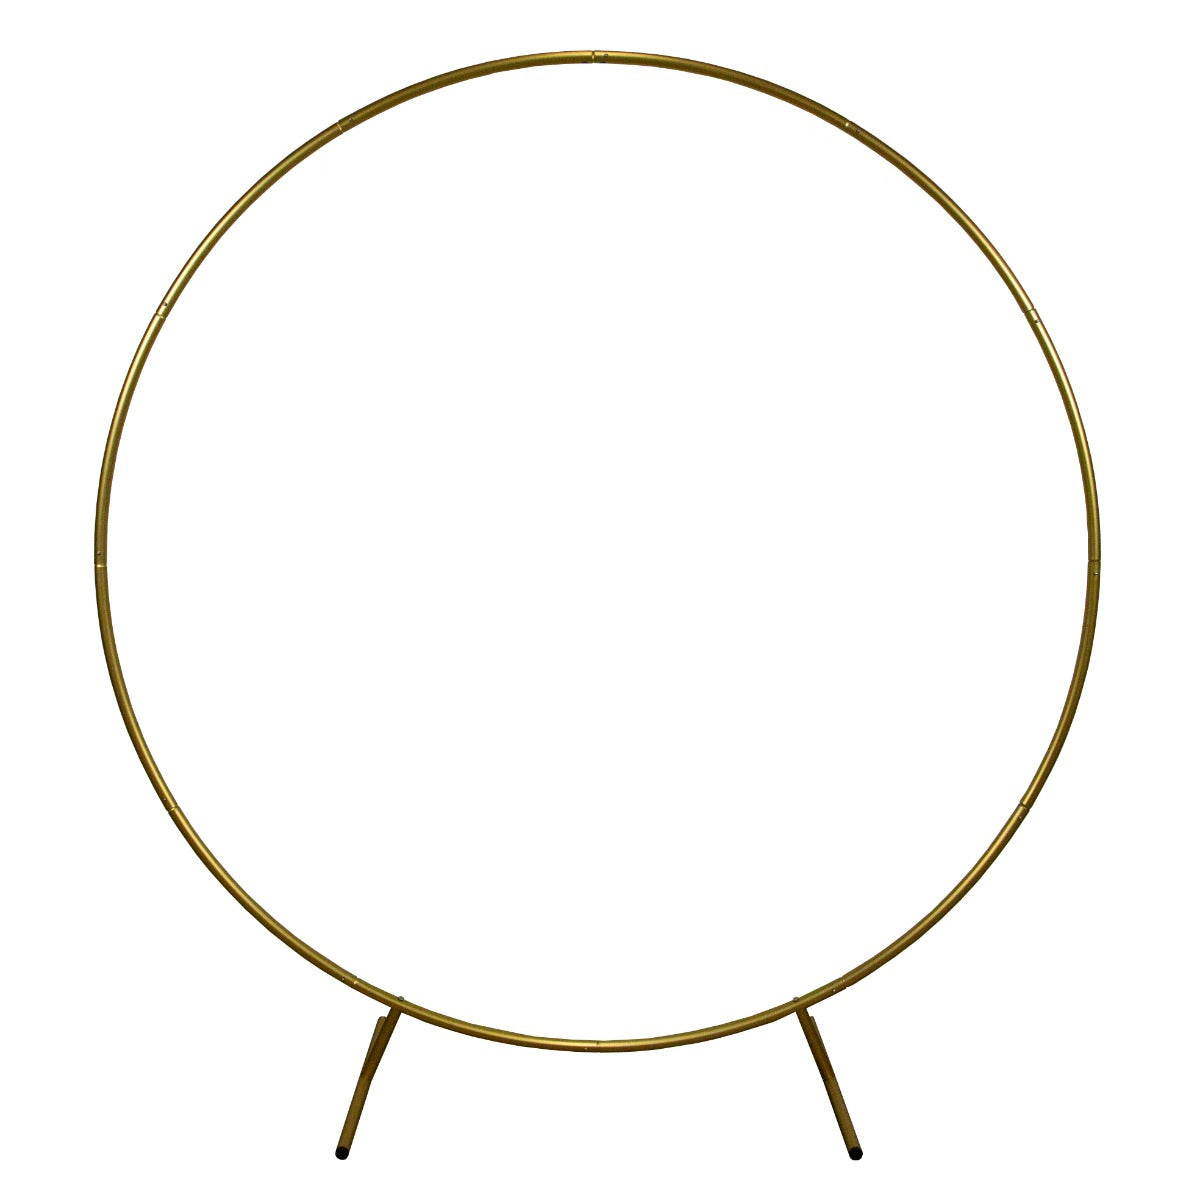 Décoration de Mariage - Combo Arche Circulaire Dorée & 1 Saule Pleureur Lumineux 240 cm Blanc Chaud